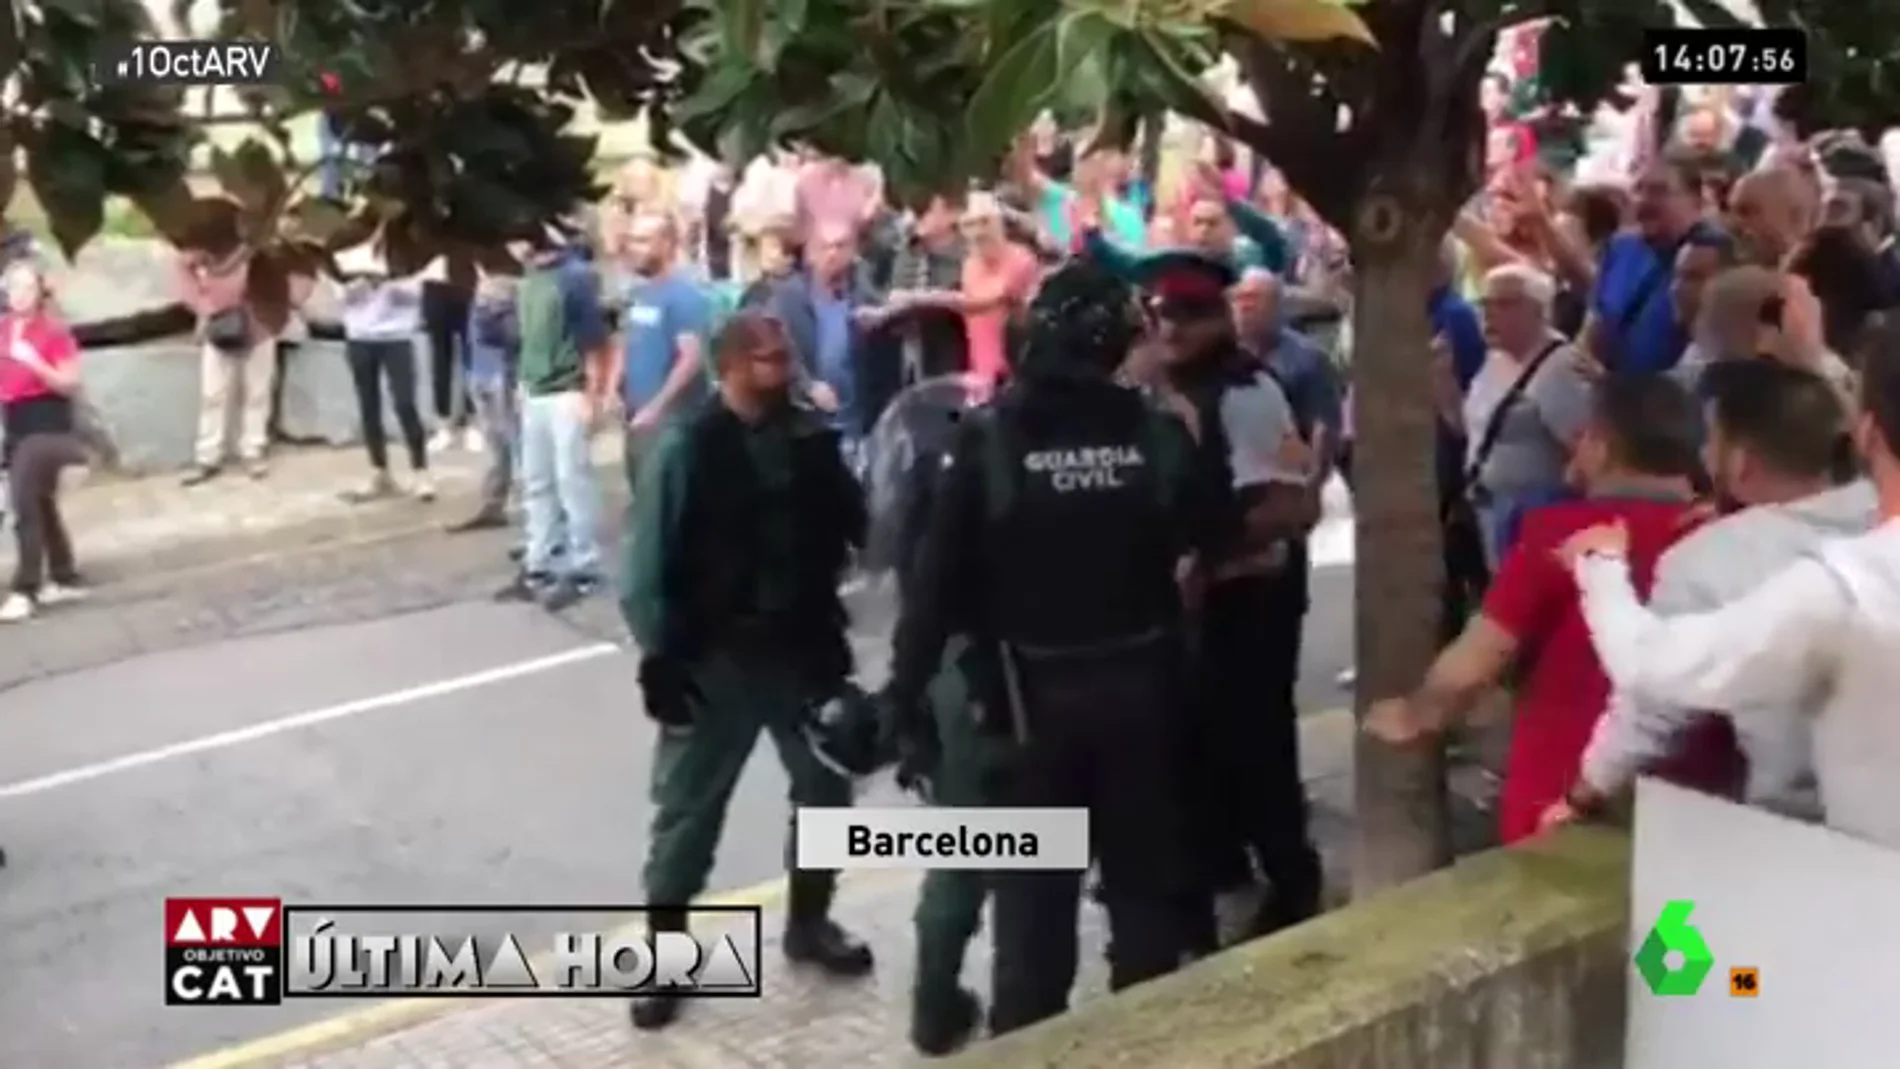 Discusión entre un Guardia Civil y un mosso d'esquadra en Barcelona